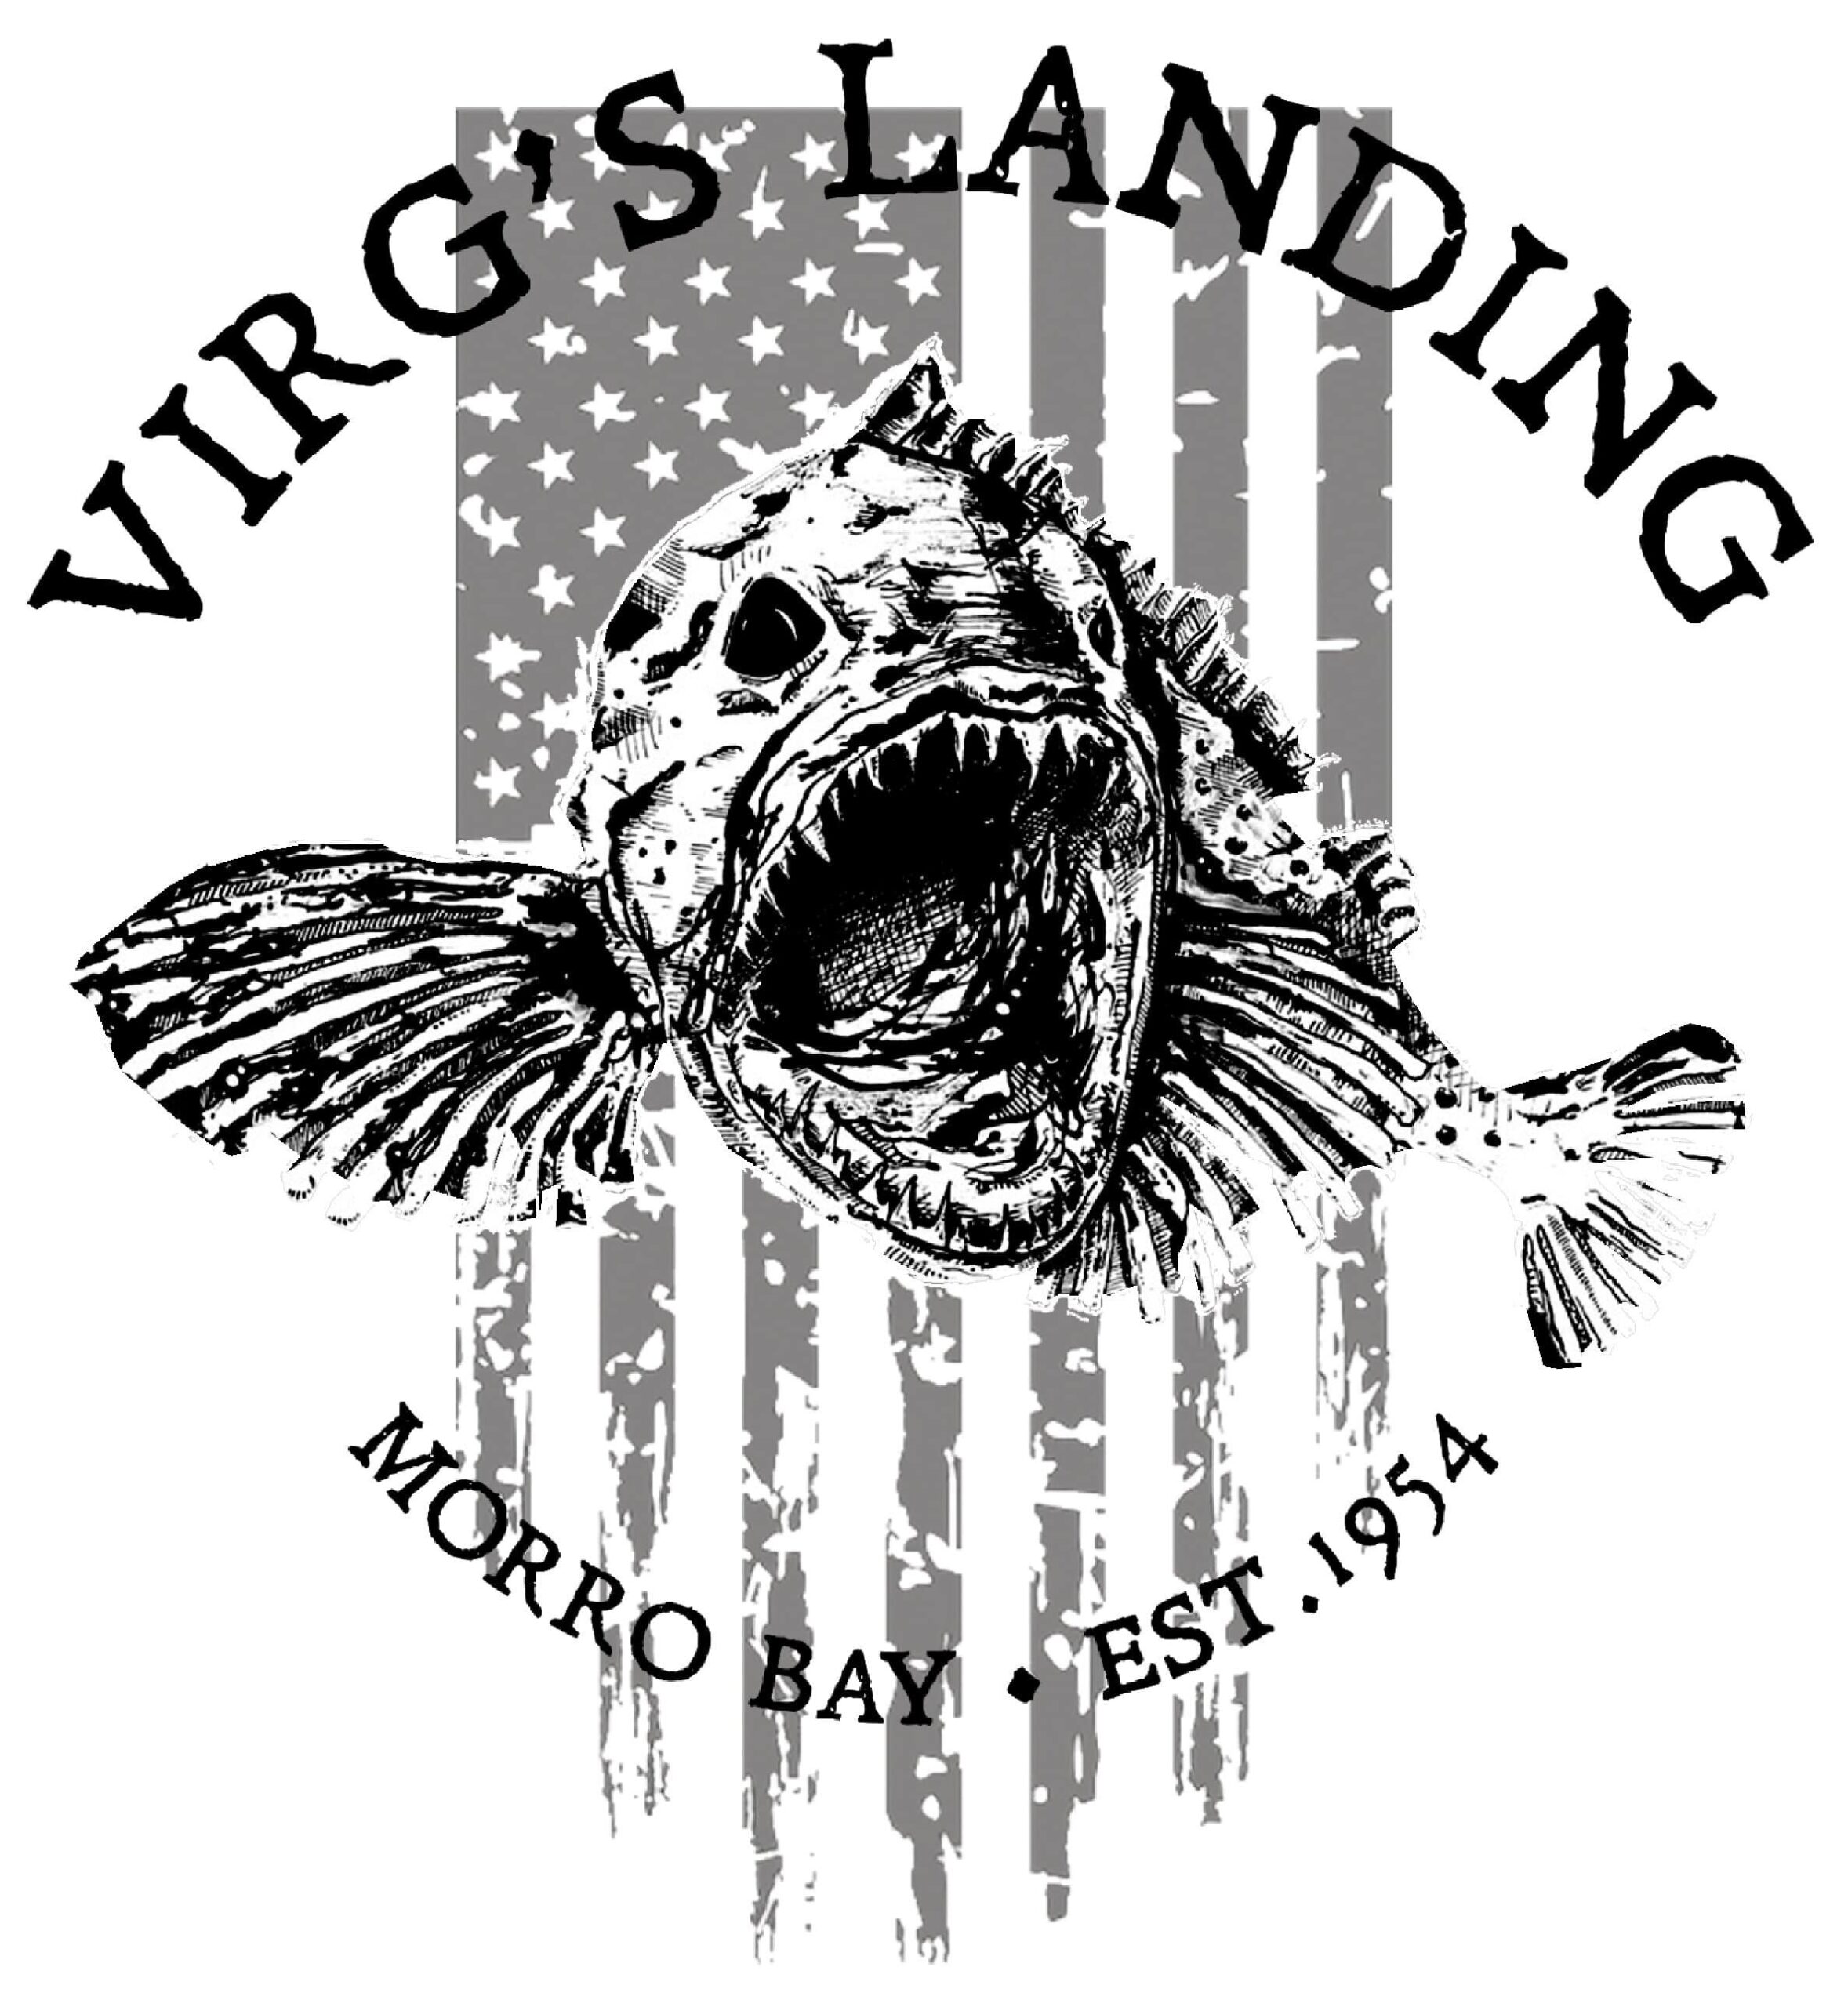 Virg's Landing